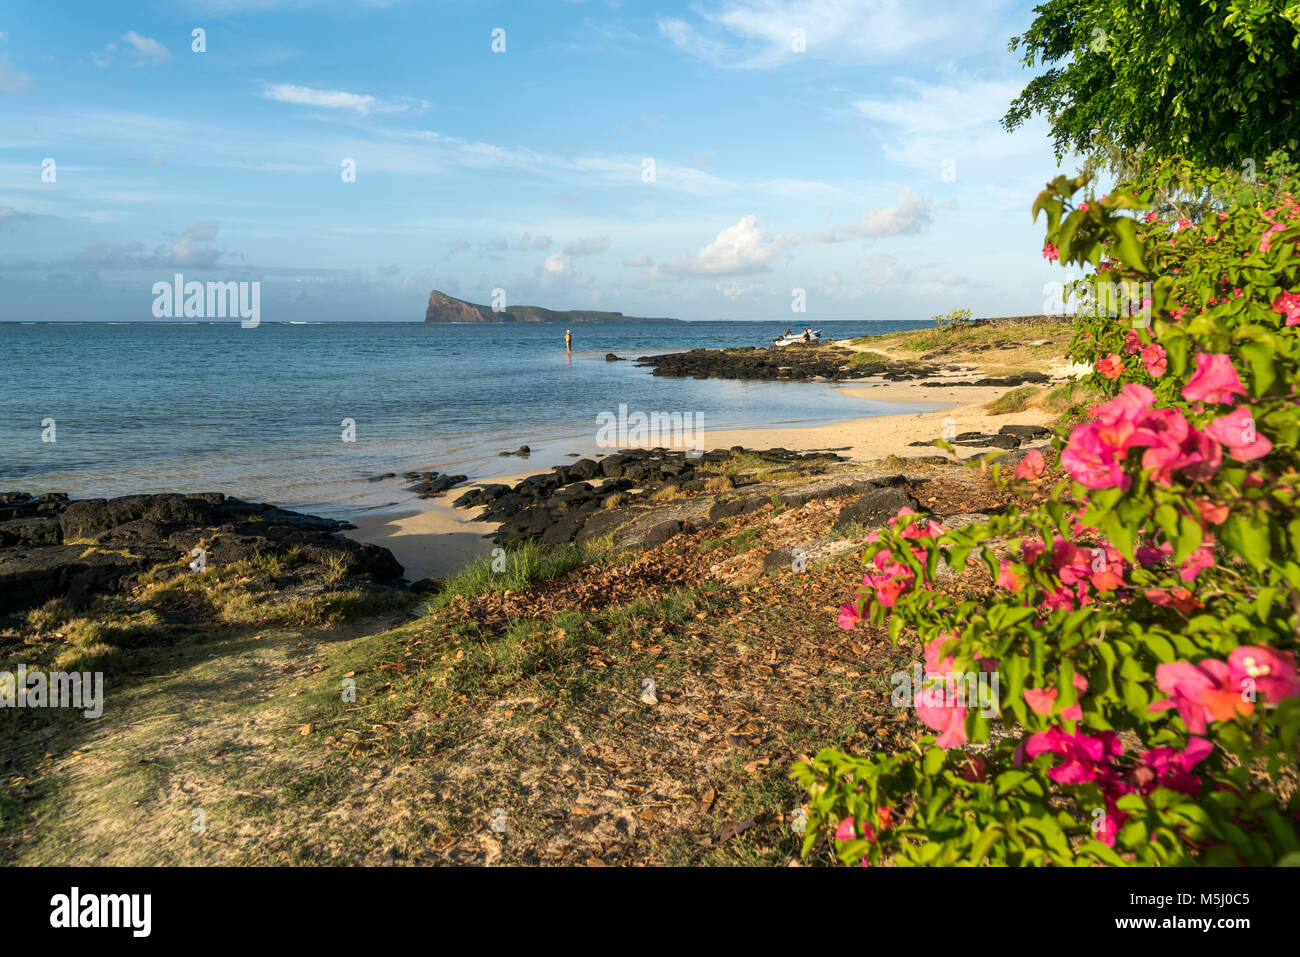 Kleiner dem Strand an der Küste und die Insel Coin de Mire, Cap Malheureux, Riviere du Rempart Mauritius, Afrika, | kleinen Strand an der Küste und Co Stockfoto